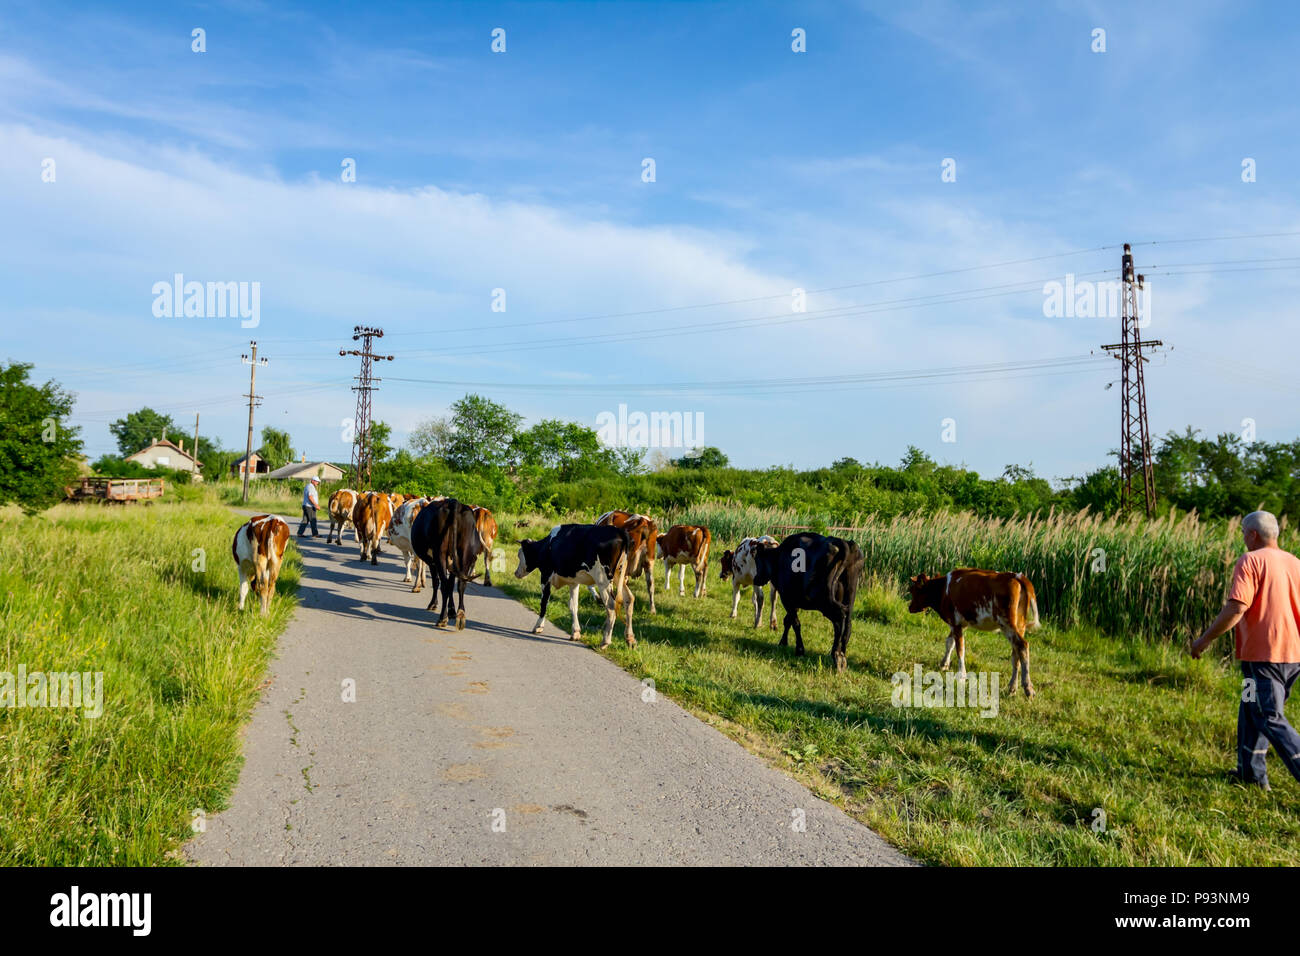 Due pastori sono alla guida di una mandria di bloodstock vacche domestiche home il fienile dopo pascoli su strada asfaltata nel villaggio. Foto Stock